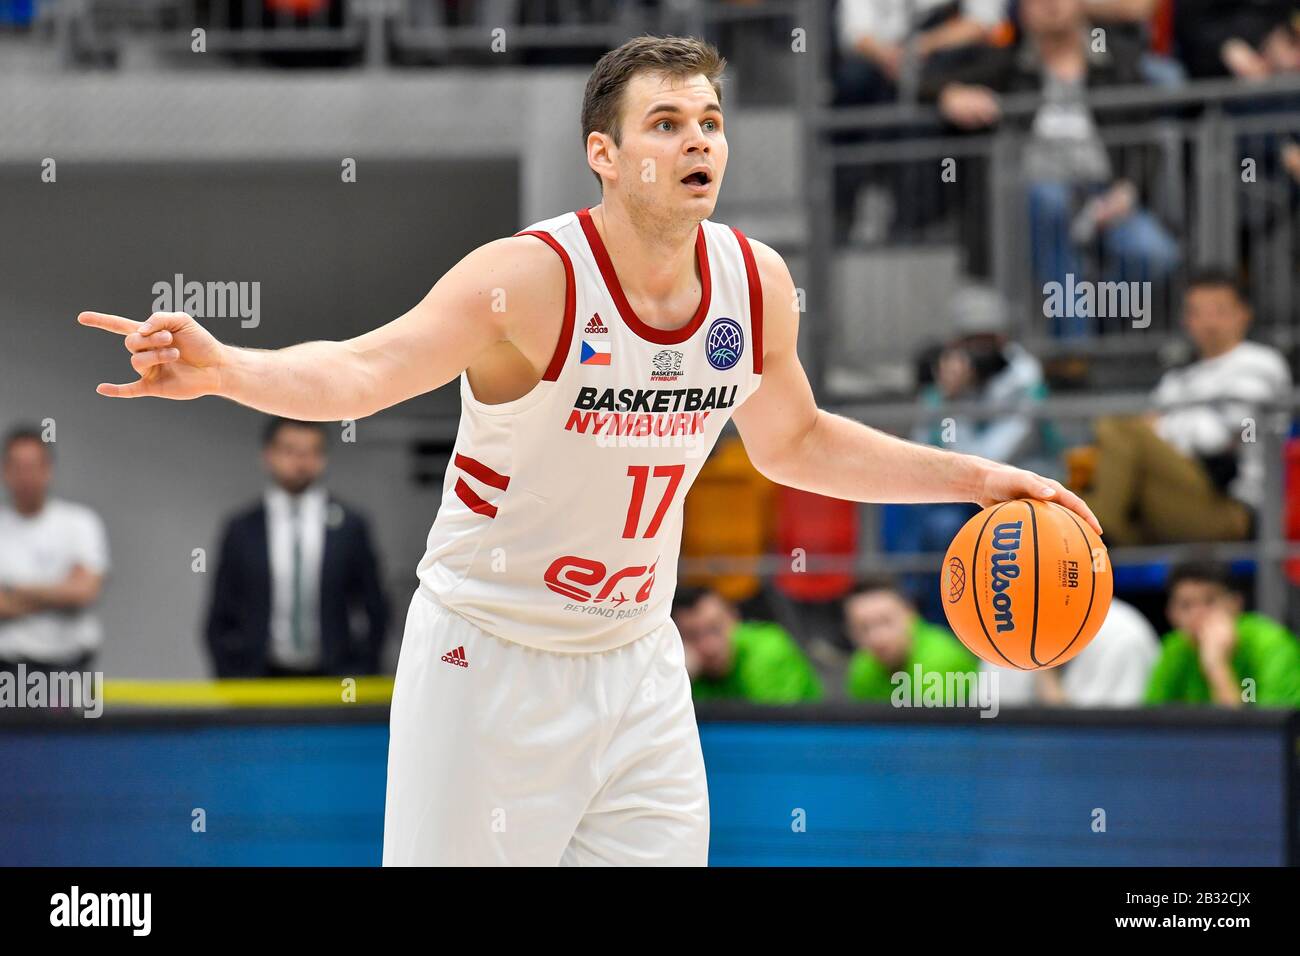 Jaromatir Bohacik (Nymburk) in azione durante la partita iniziale della Basketball Champions League Nymburk vs Bandirma (Turchia) a Praga, Repubblica Ceca, 3 marzo 2020. (Foto Ctk/Vit Simanek) Foto Stock